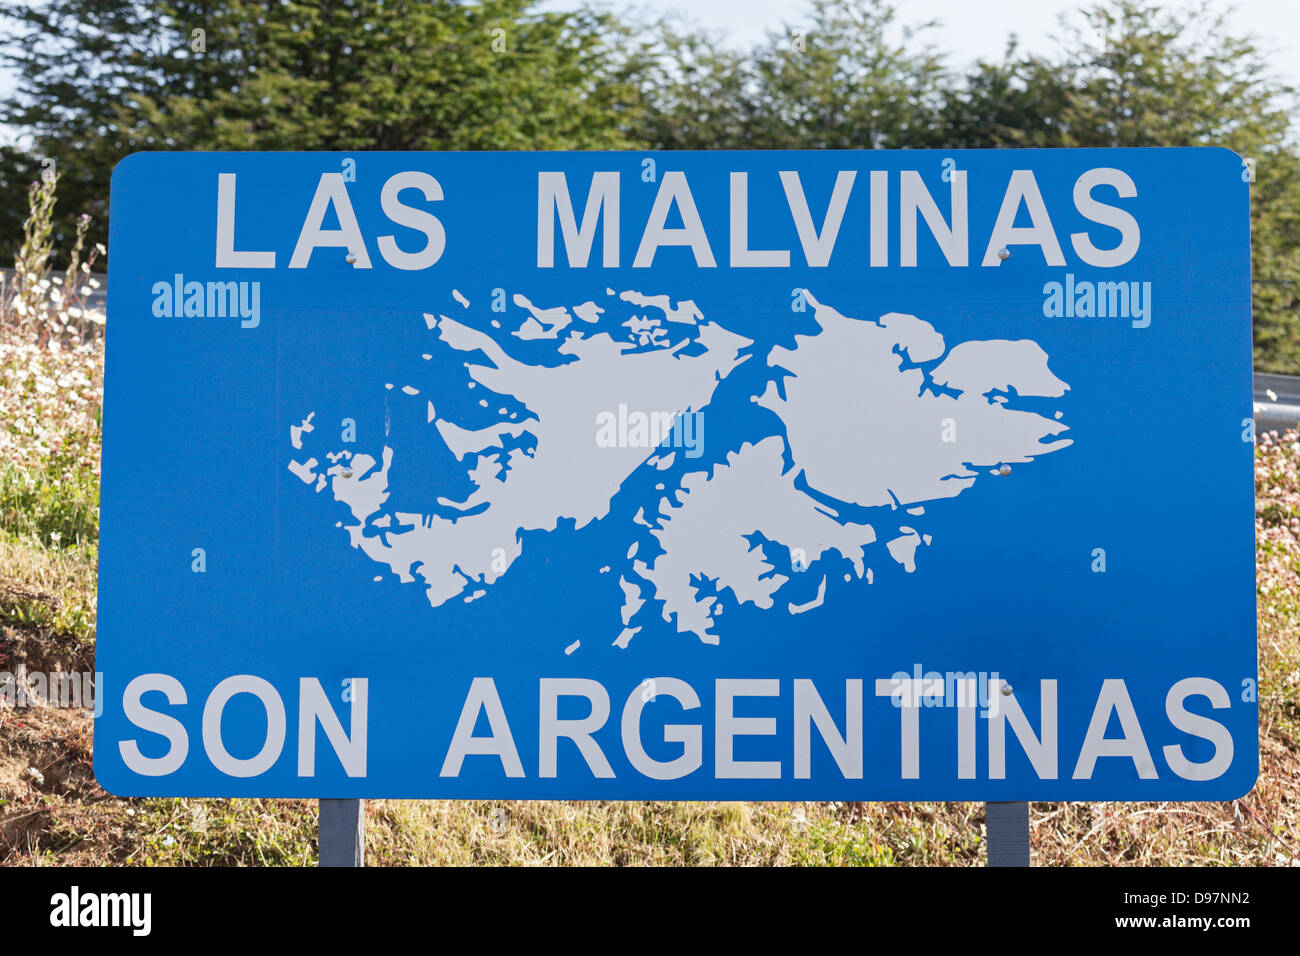 Fils de Las Malvinas Argentinas - signe de route en Argentine Banque D'Images